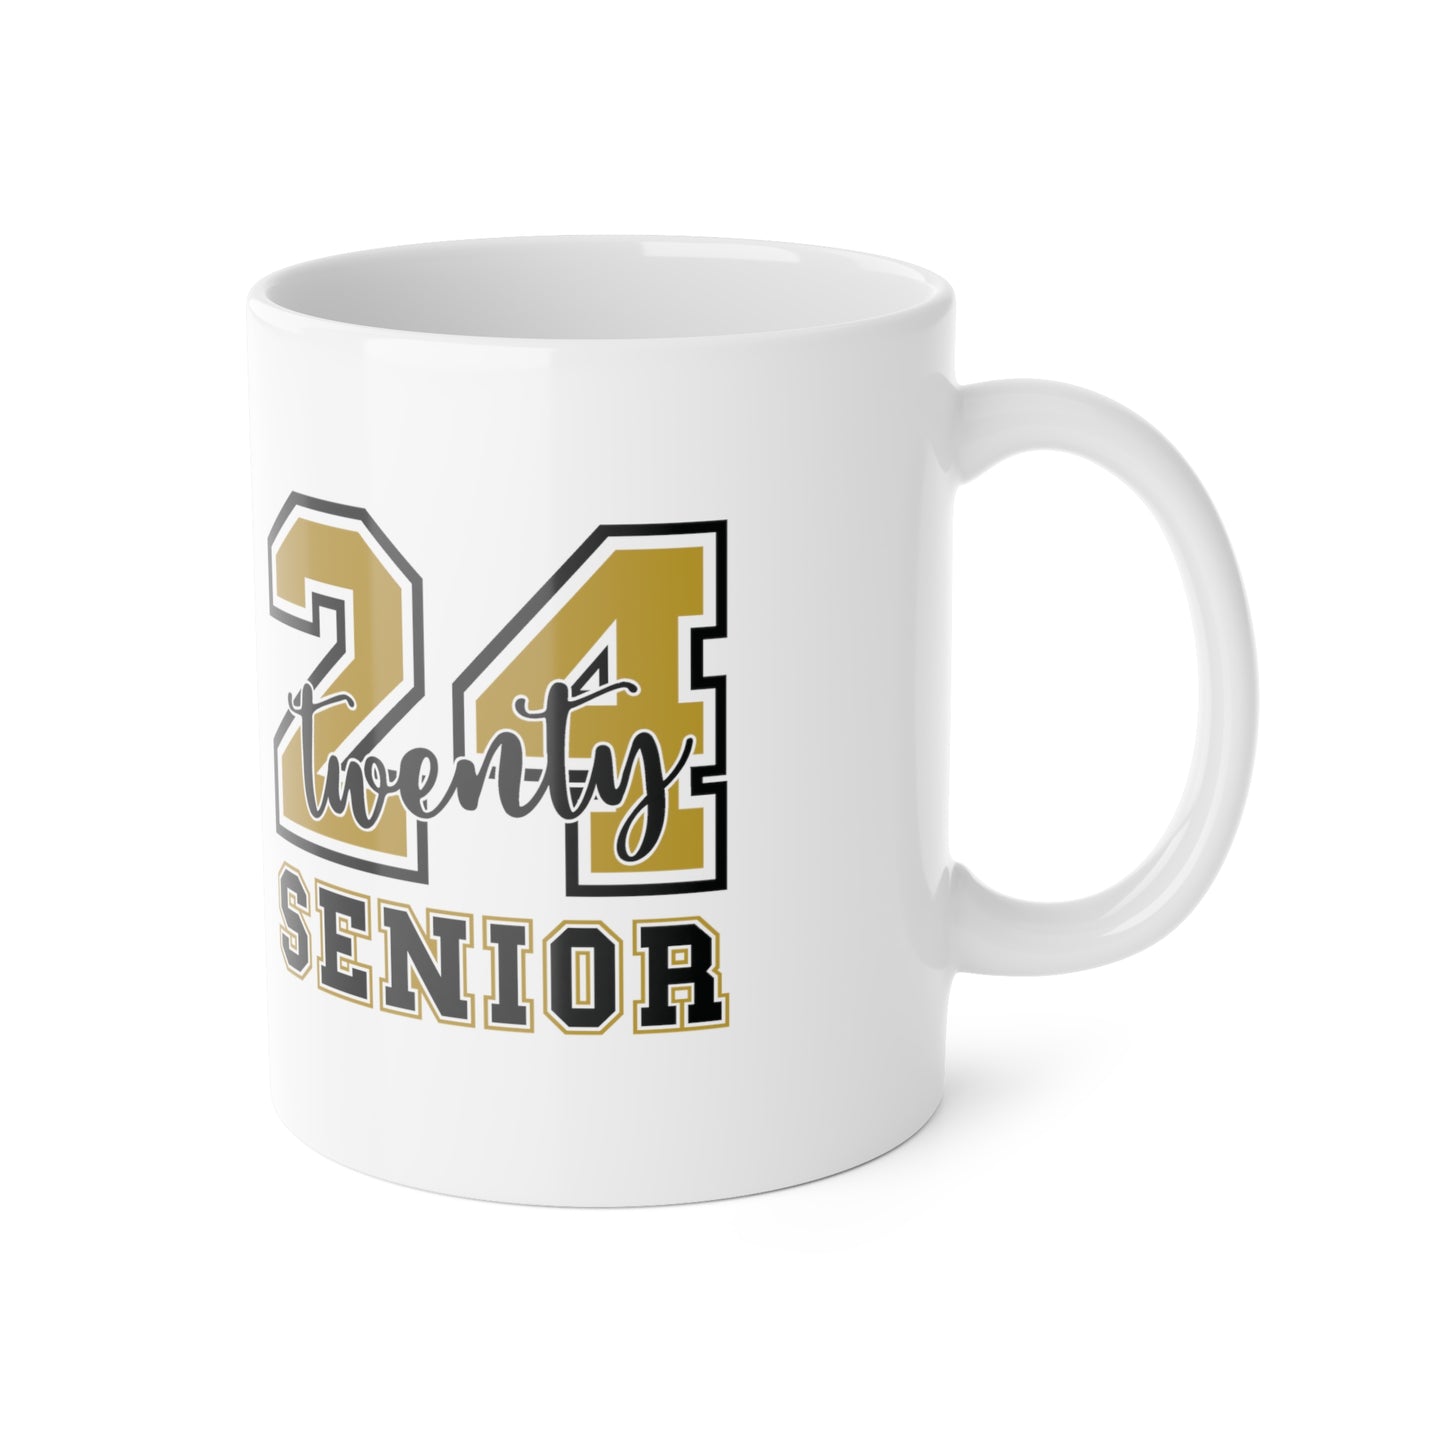 Twenty 24 Senior Ceramic Mug, 11oz